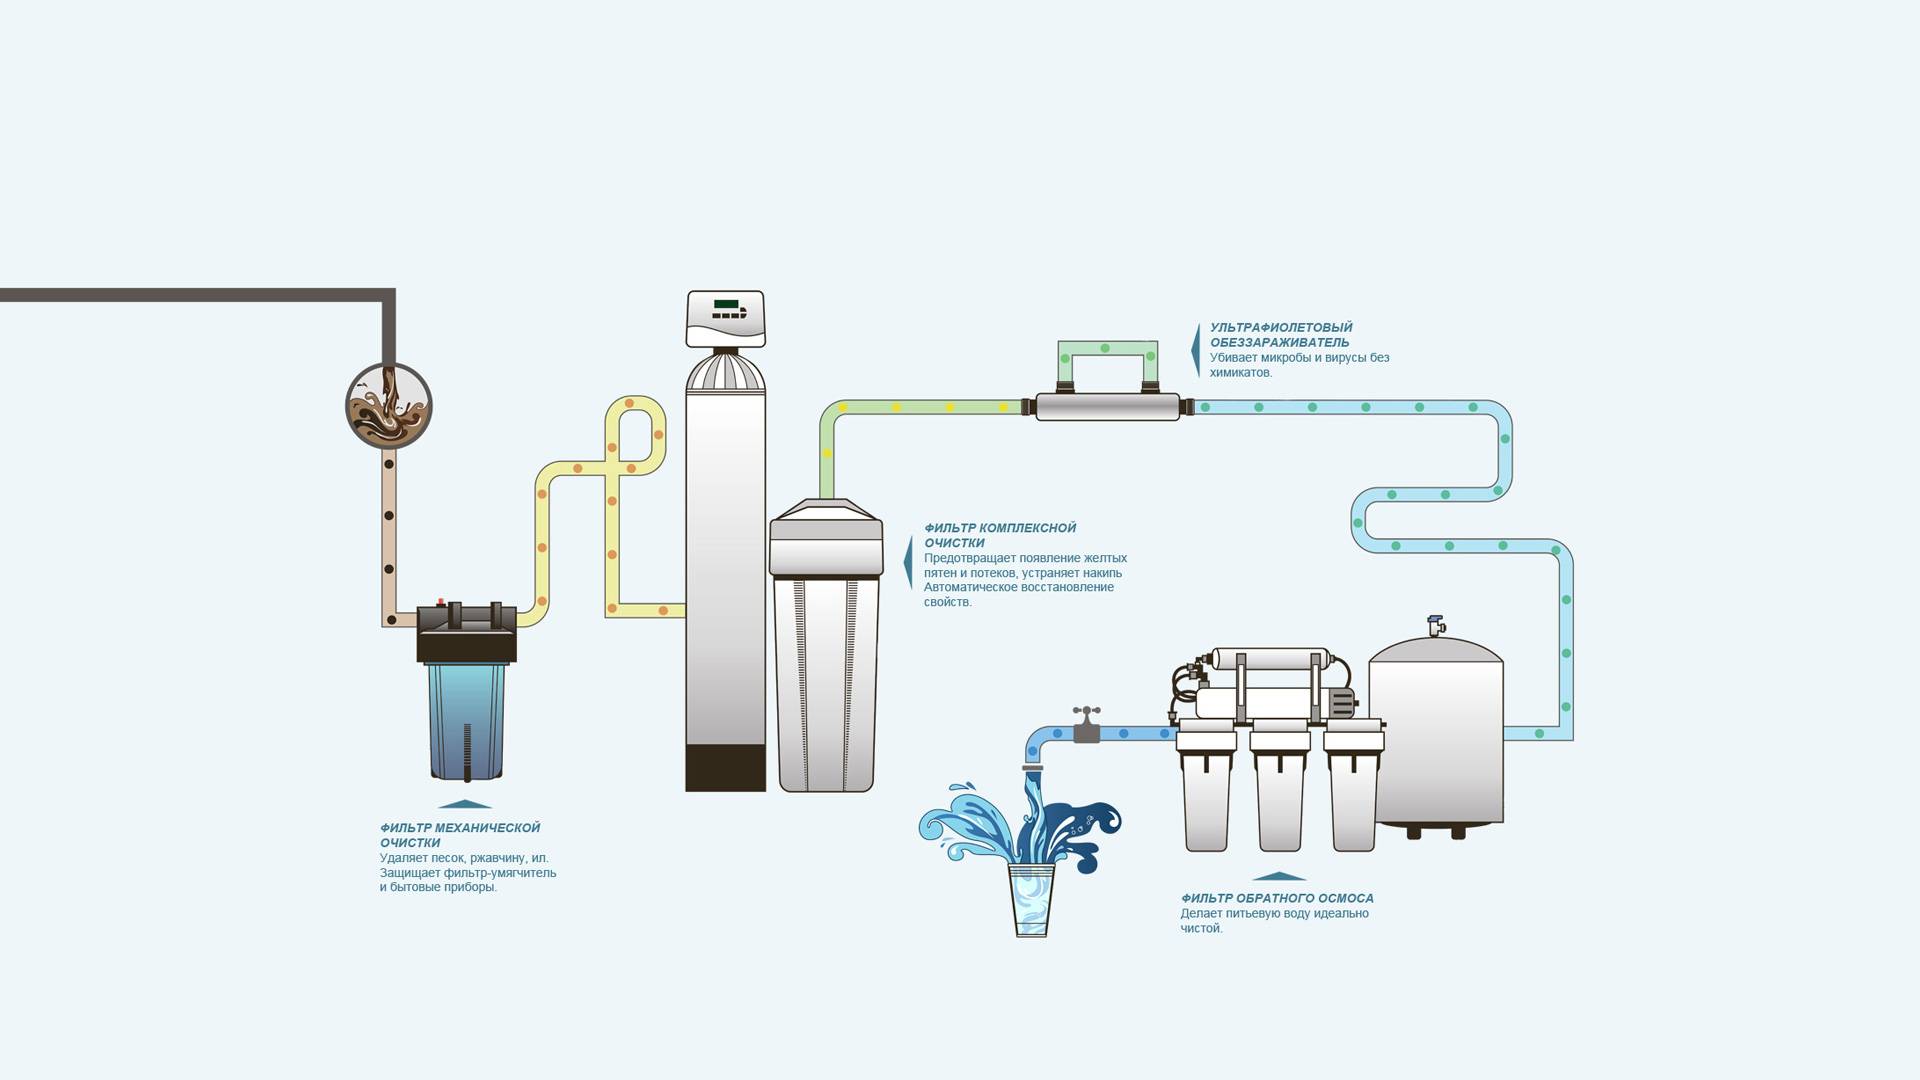 Станция водоподготовки: этапы водоочистки и обеззараживания внутригородских сетей